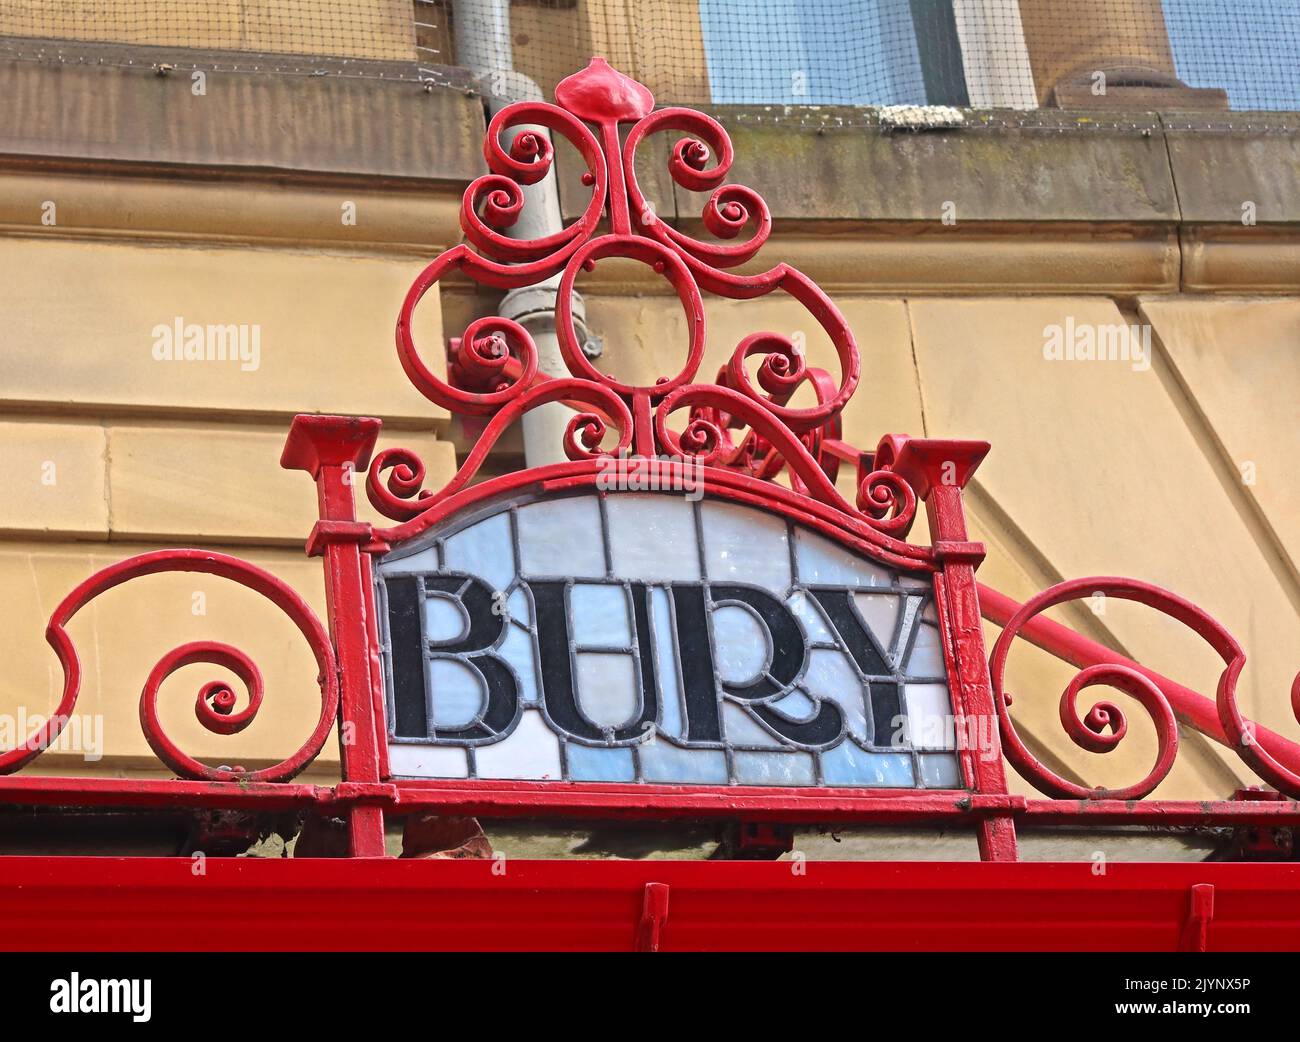 Bury - Jugendstil, Schriftzüge, die M&LR- und L&YR-Ziele auf einem kunstvollen Glas- und Eisendach zeigen, Bahnhof Manchester Victoria Stockfoto